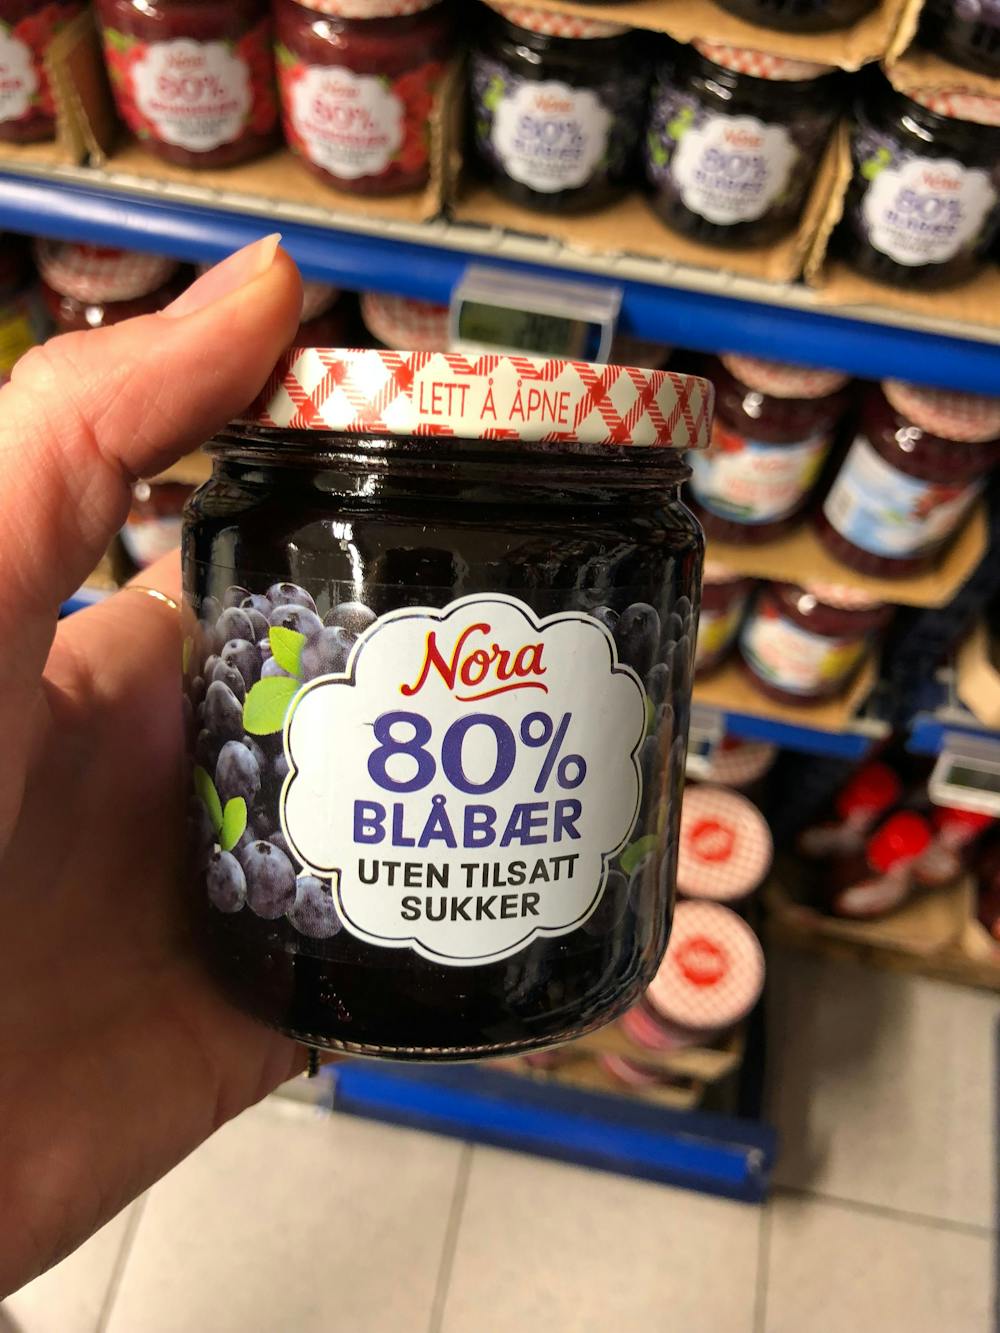 80% Blåbær, Nora